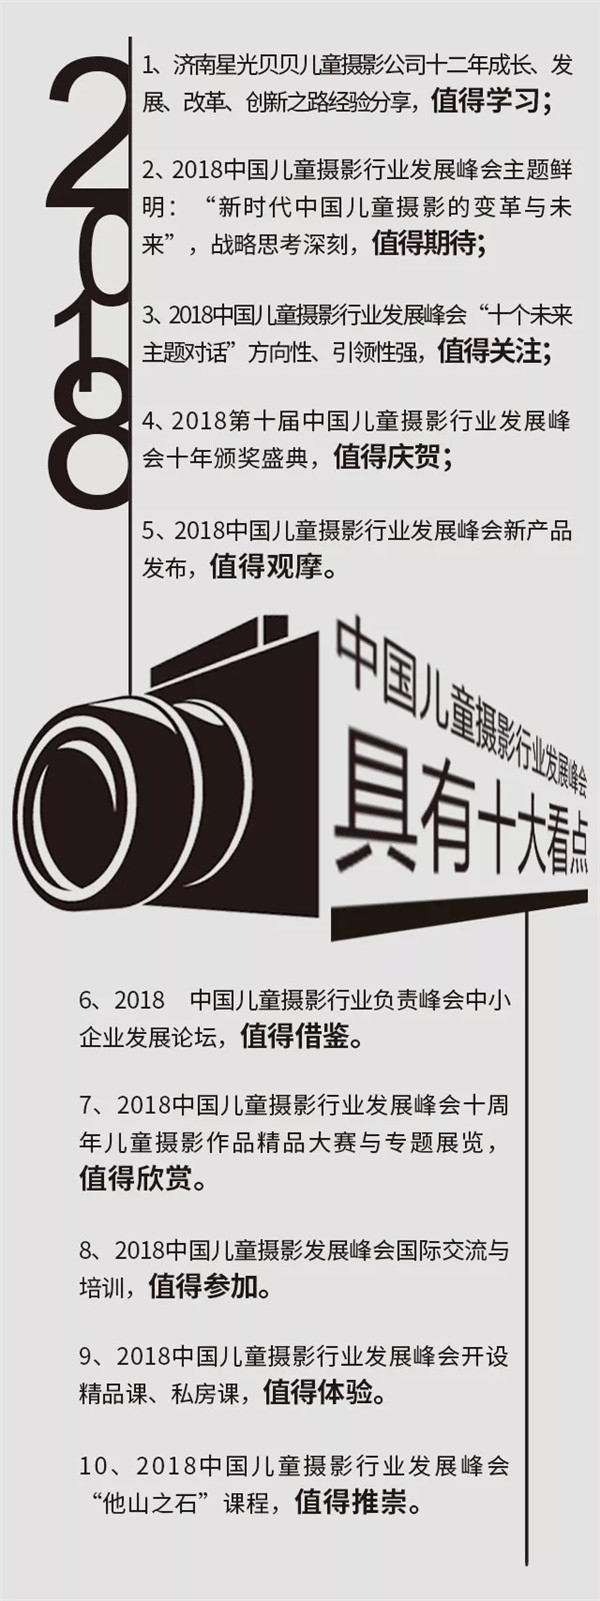 第十届儿童摄影行业发展峰会11月11日将于济南举办